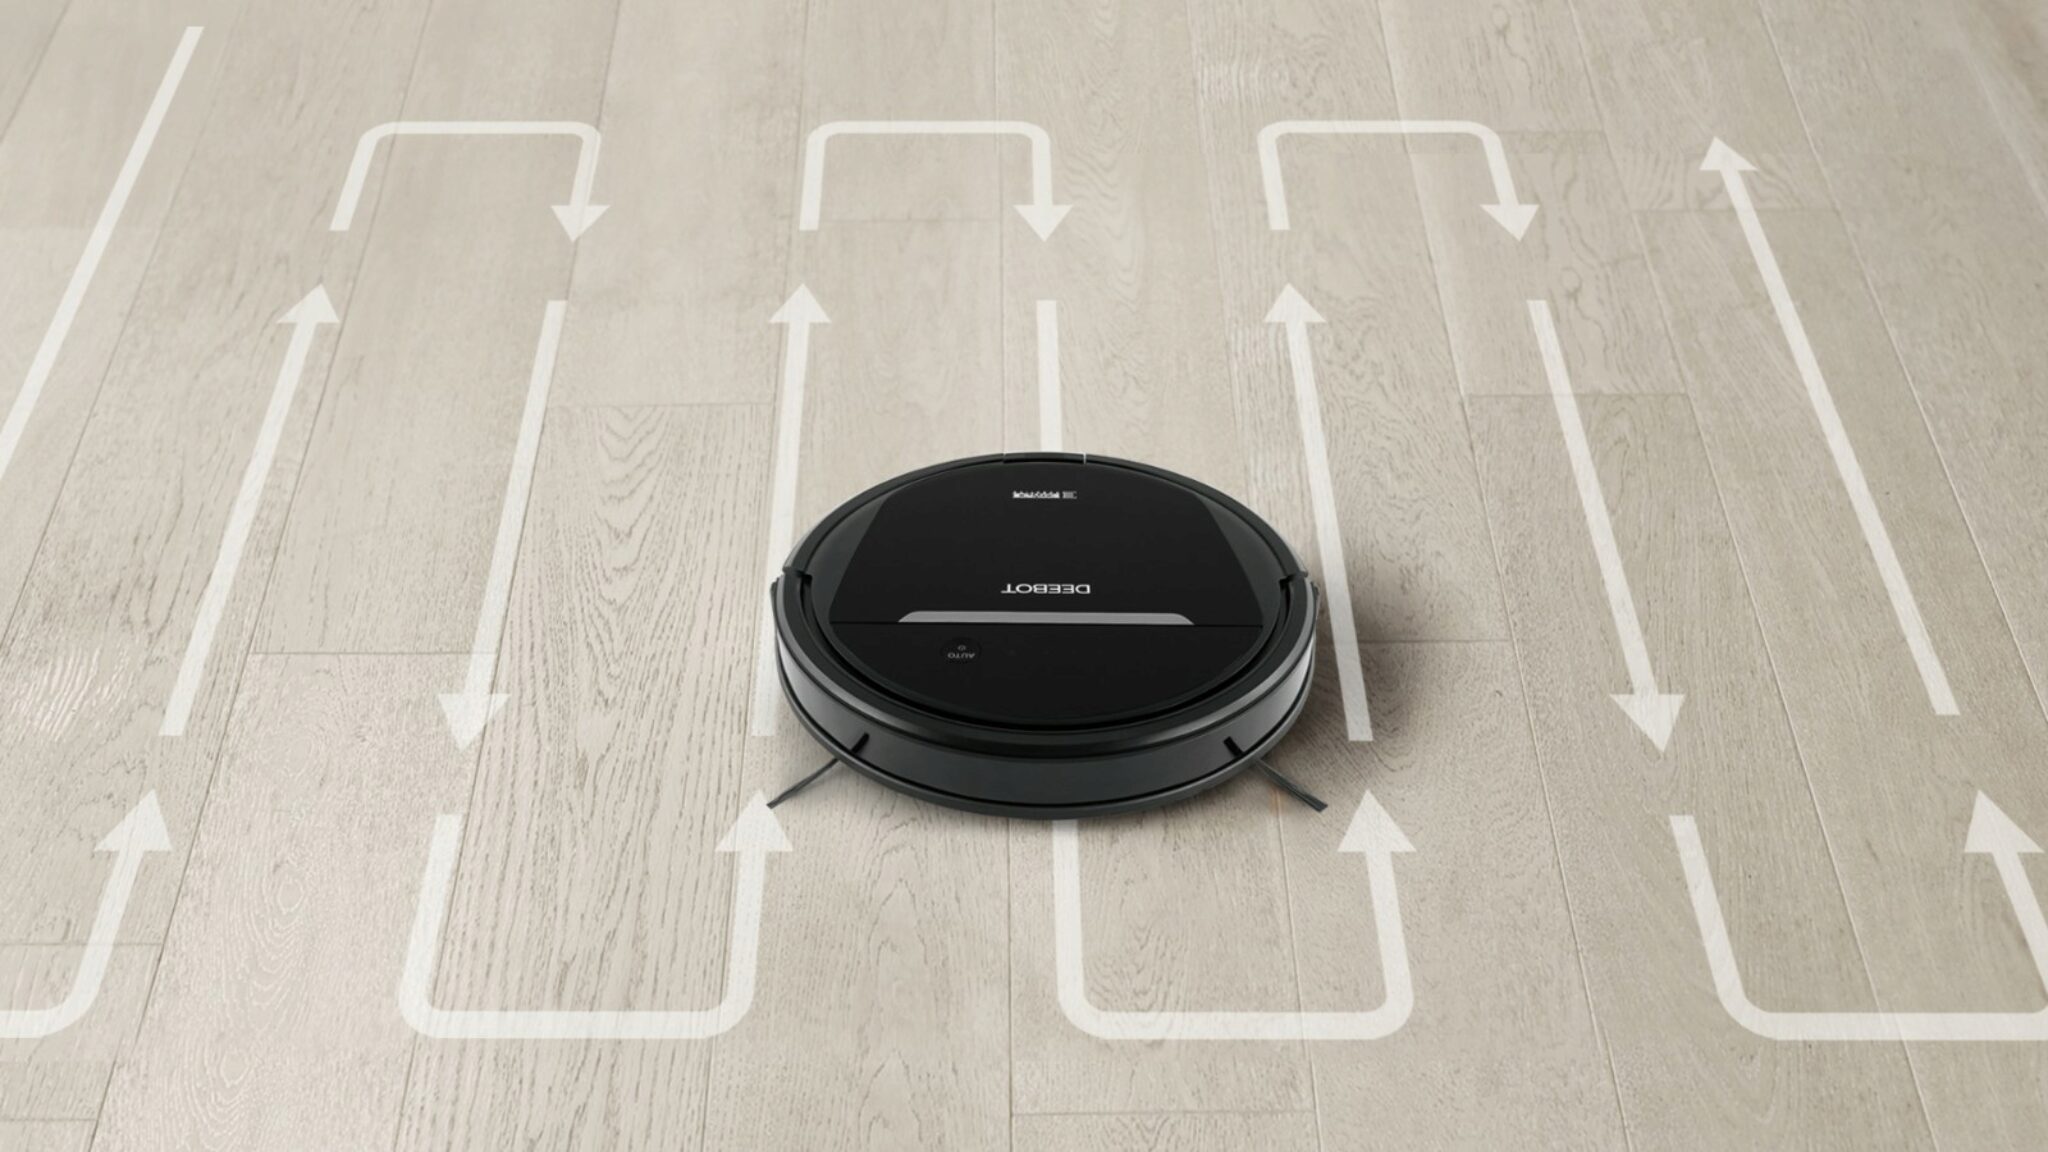 Deebot Vs Roomba Robotstofzuigers